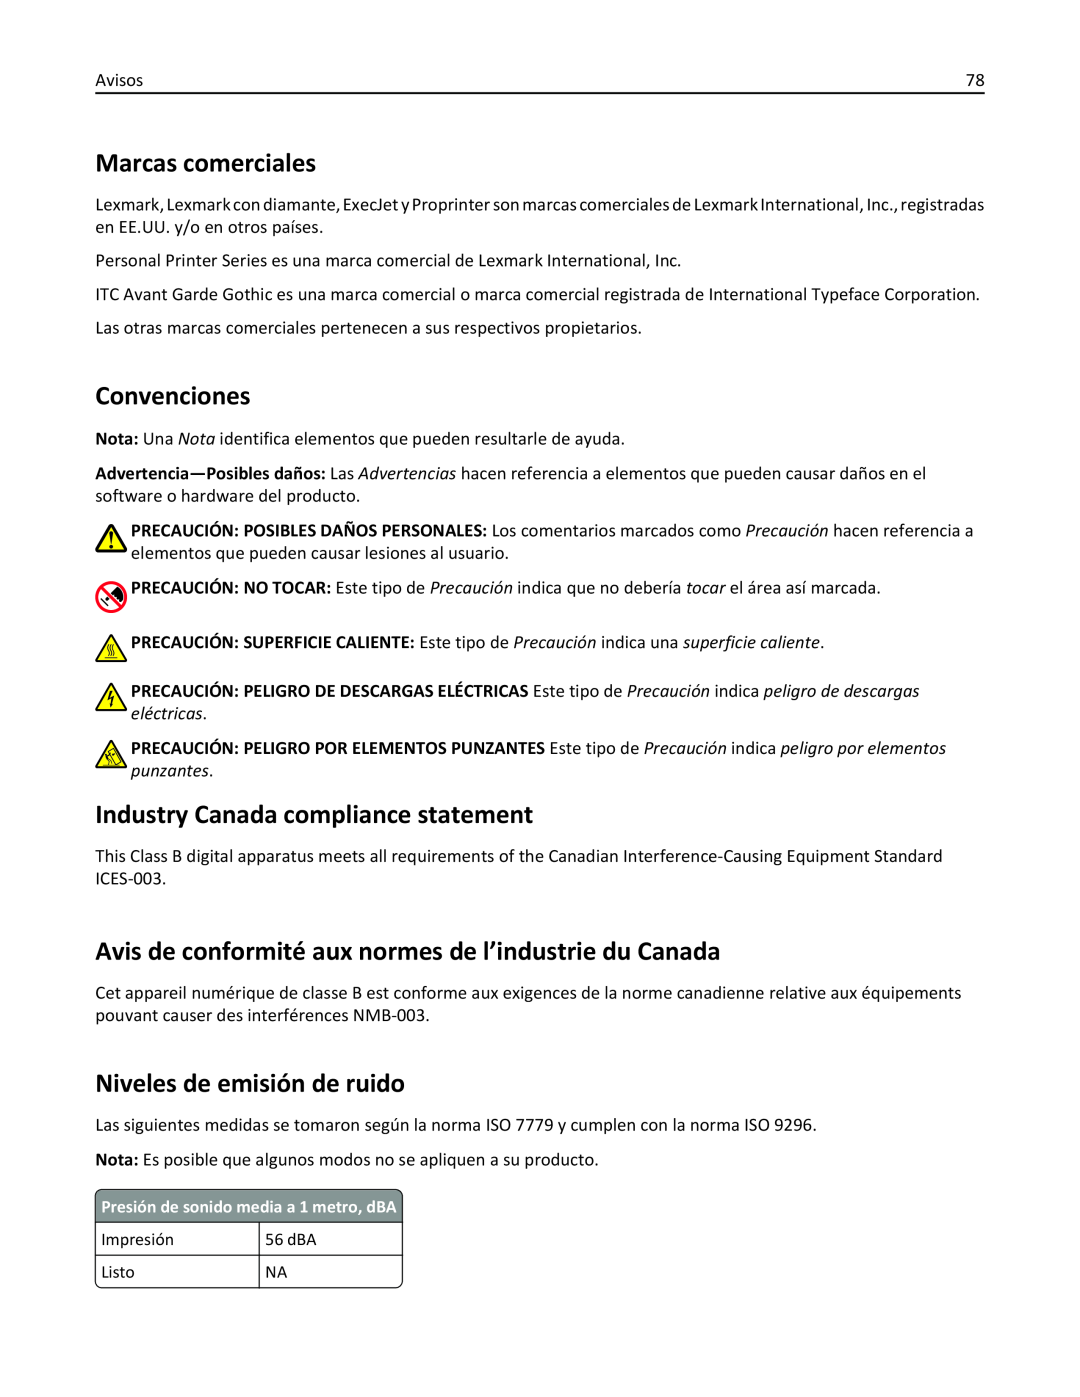 Lexmark 2500 manual Marcas comerciales, Convenciones, Industry Canada compliance statement, Niveles de emisión de ruido 